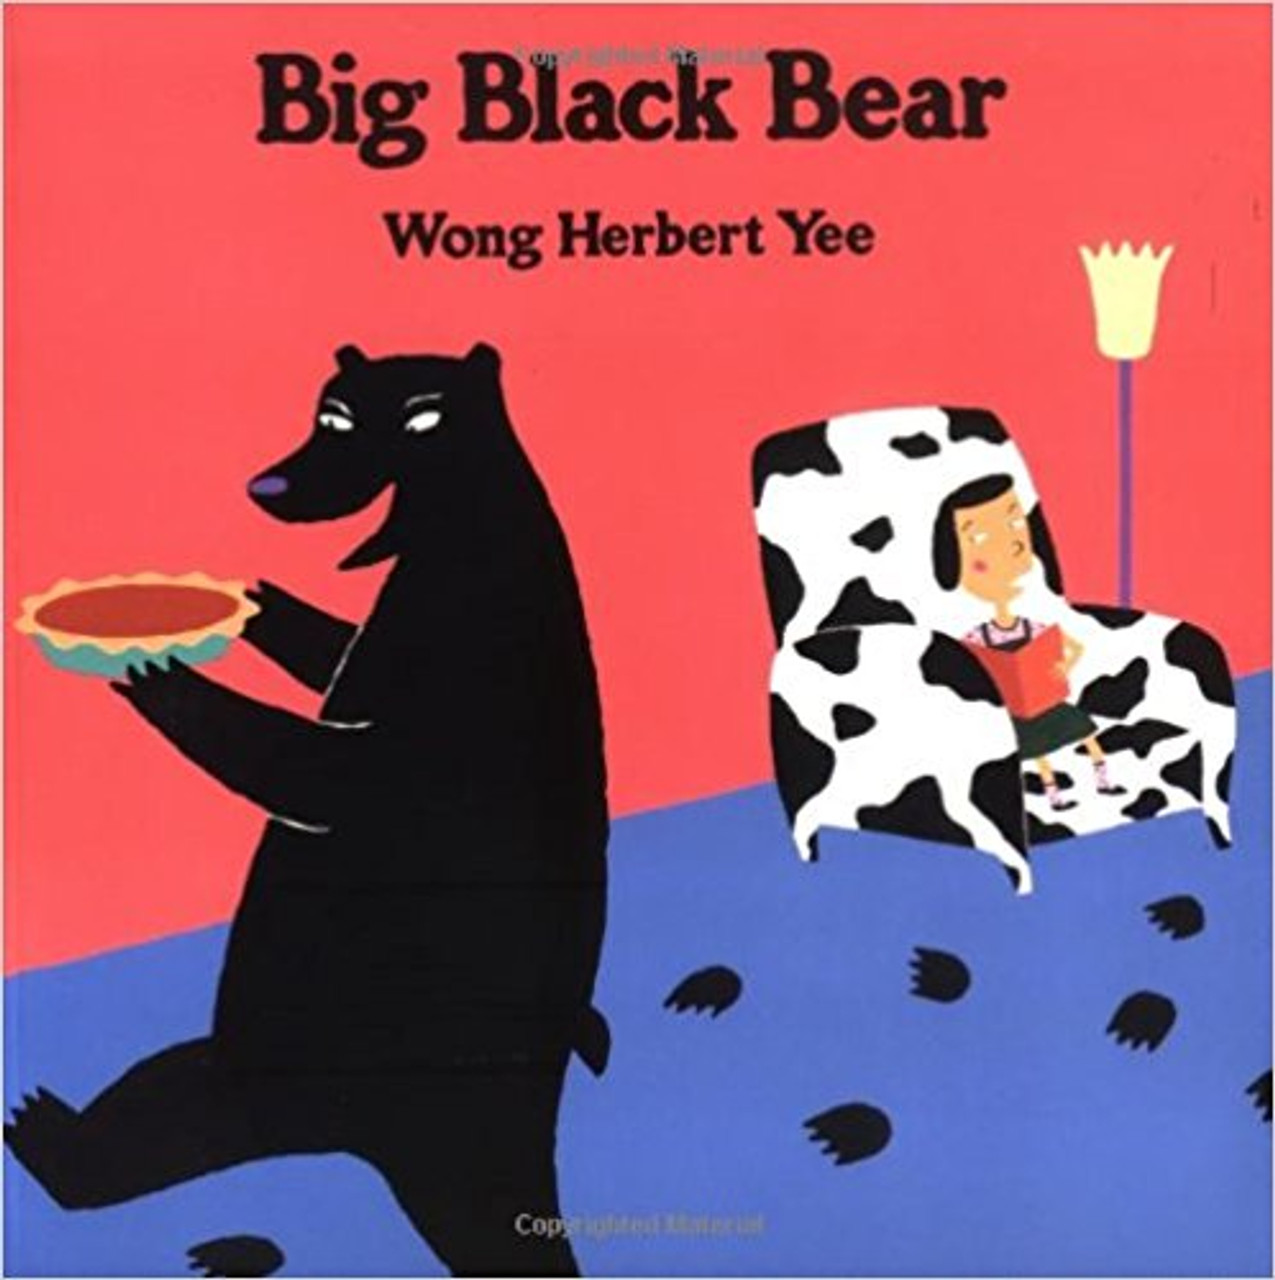 Big Black Bear by Wong Herbert Yee